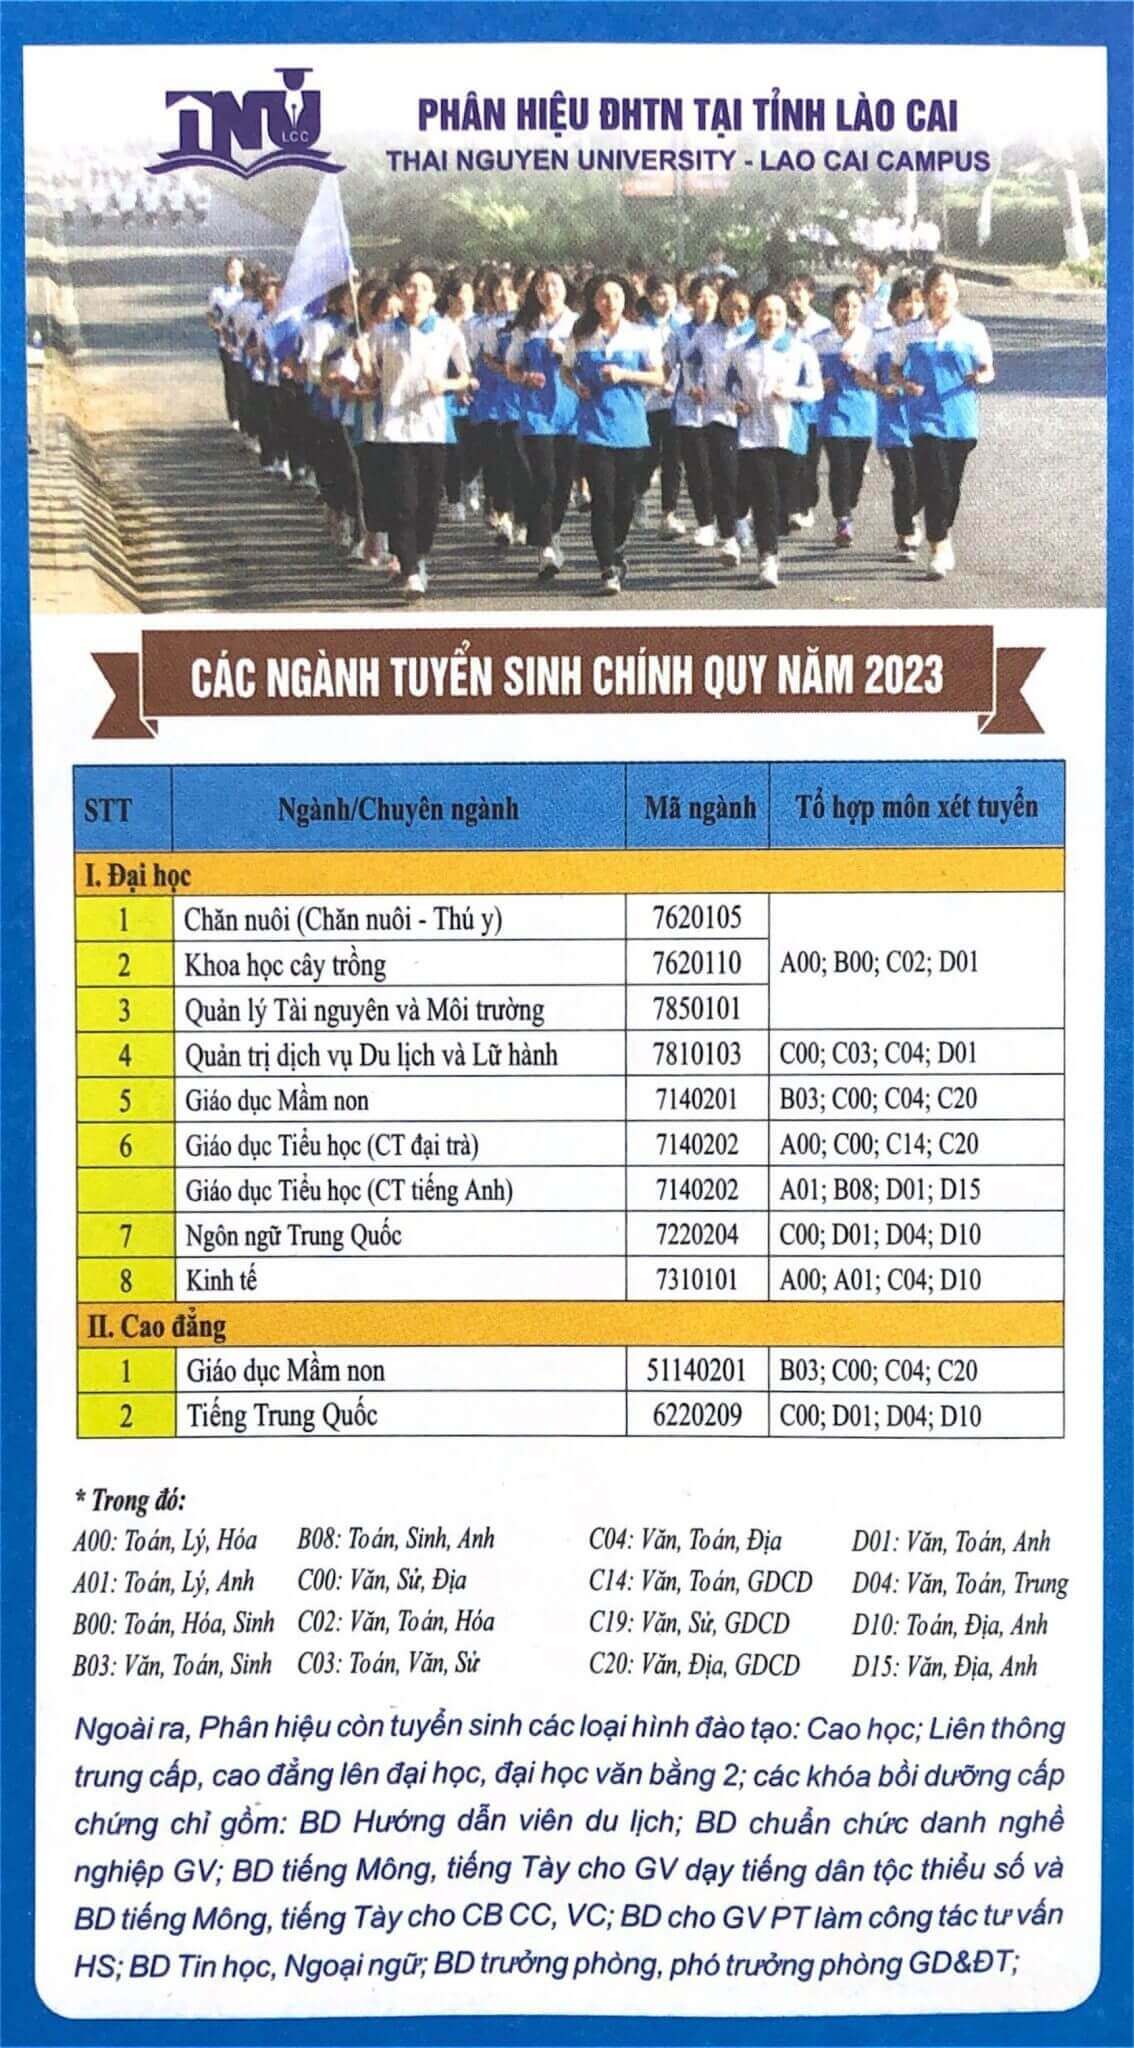 Điểm chuẩn Phân hiệu Đại học Thái Nguyên tại Lào Cai 2023 (chính xác nhất) | Điểm chuẩn các năm